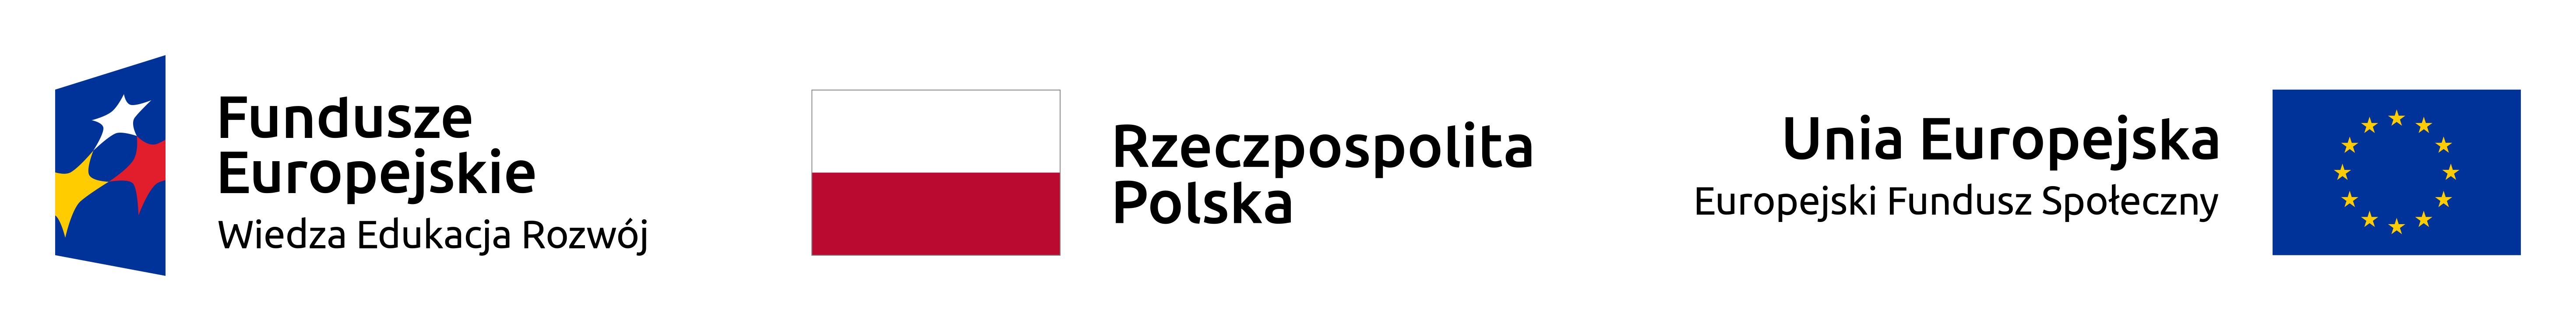 Logotyp Funduszy Europejskich - niebieski czworokąt z trzema gwiazdami umieszczonymi w środku: żółtą, czerwoną i białą, po prawej stronie napis Fundusze Europejskie Wiedza Edukacja Rozwój. Obok Biało czerwona Flaga Polski z napisem Rzeczpospolita Polska.  Obok flaga Unii Europejskiej - na fladze przedstawiony jest okrąg złożony z dwunastu złotych gwiazd na błękitnym tle, po lewej stronie napis Unia Europejska Europejski Fundusz Społeczny